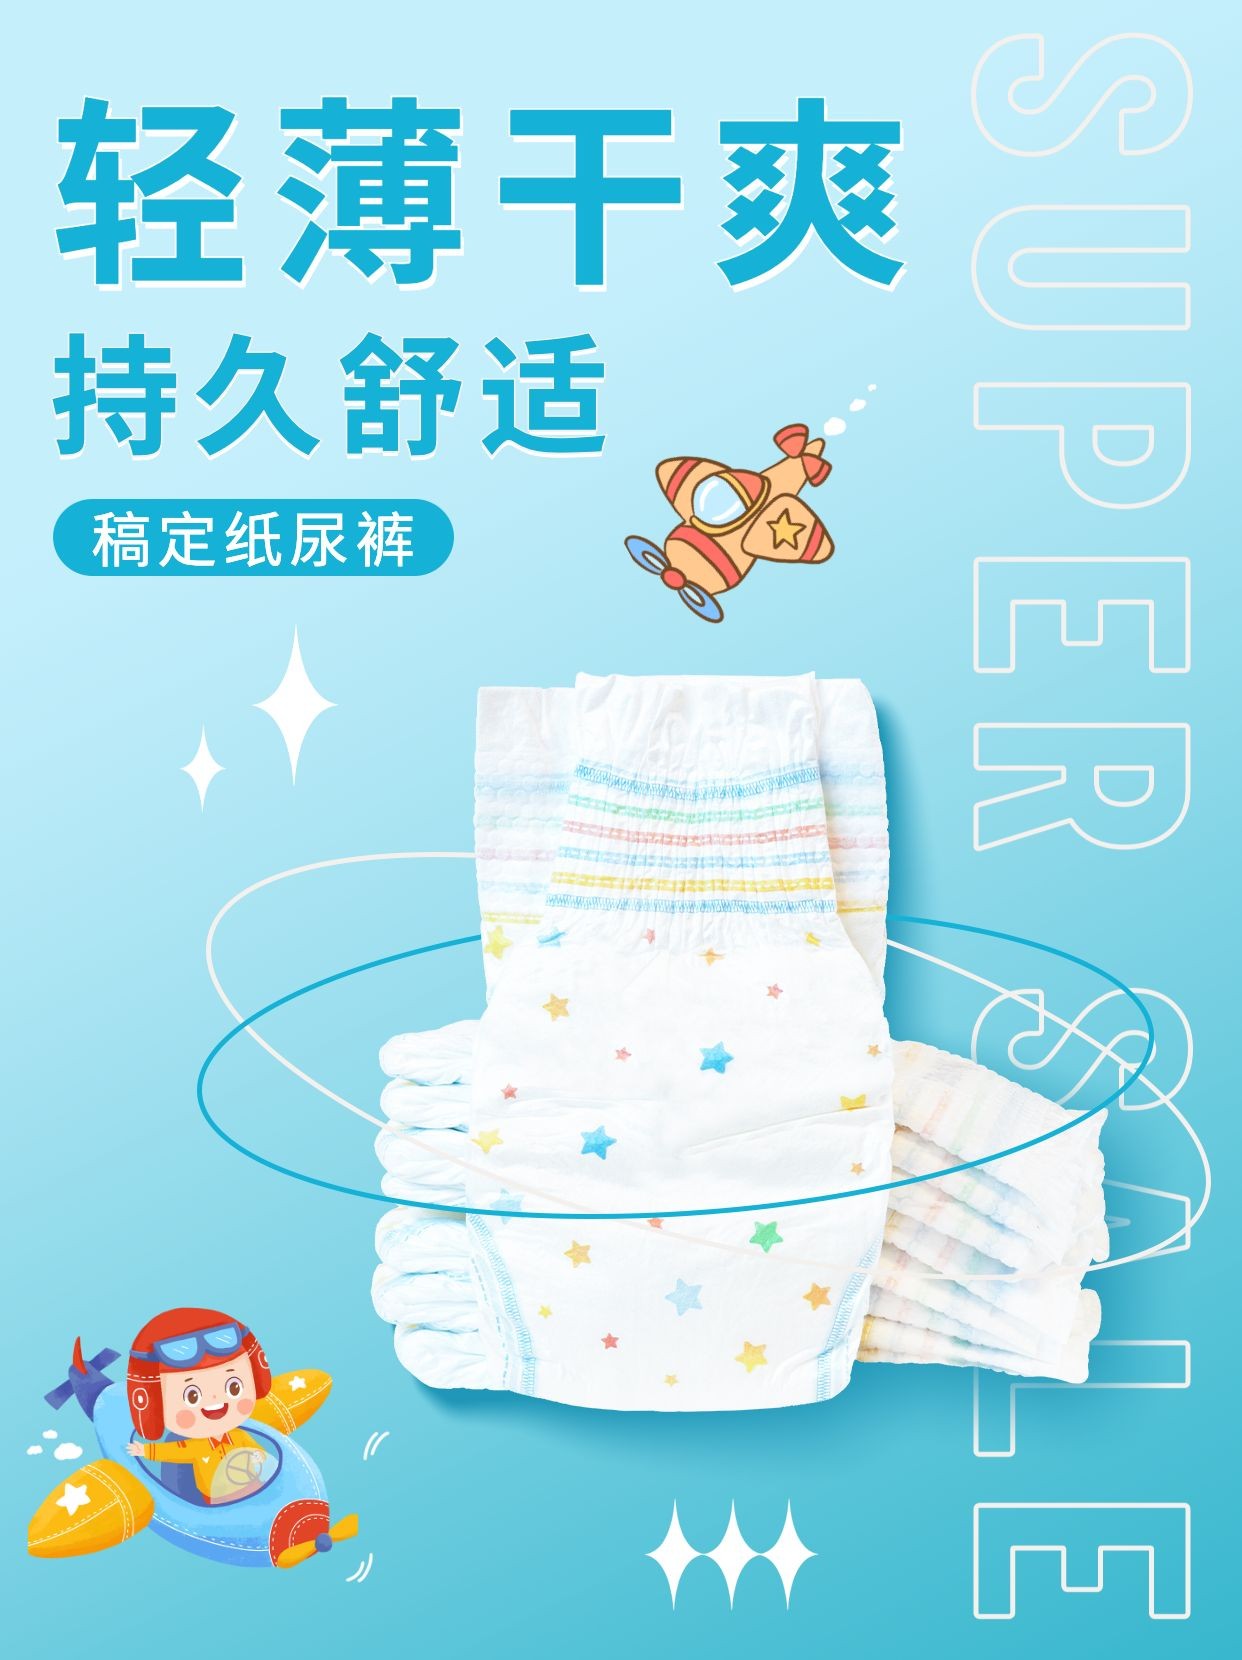 母婴亲子婴幼儿产品介绍营销小红书配图